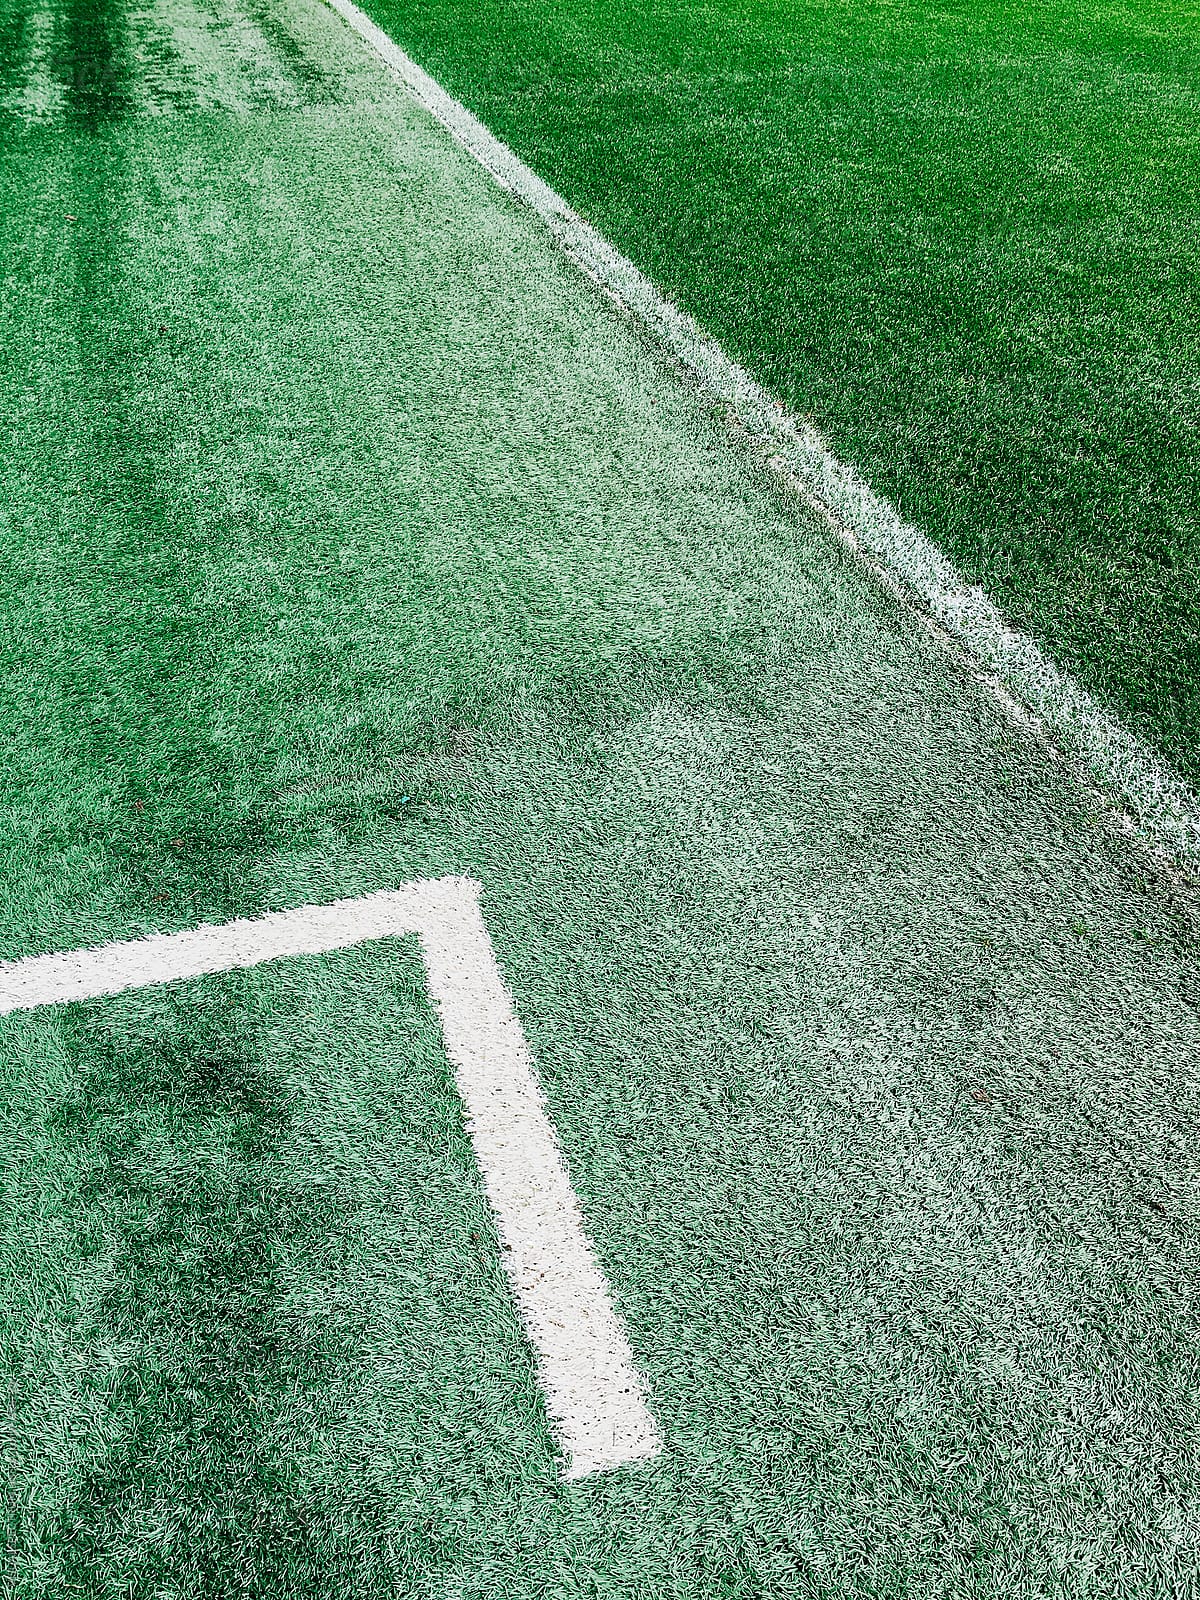 White Line on Green Grassy Soccer Field